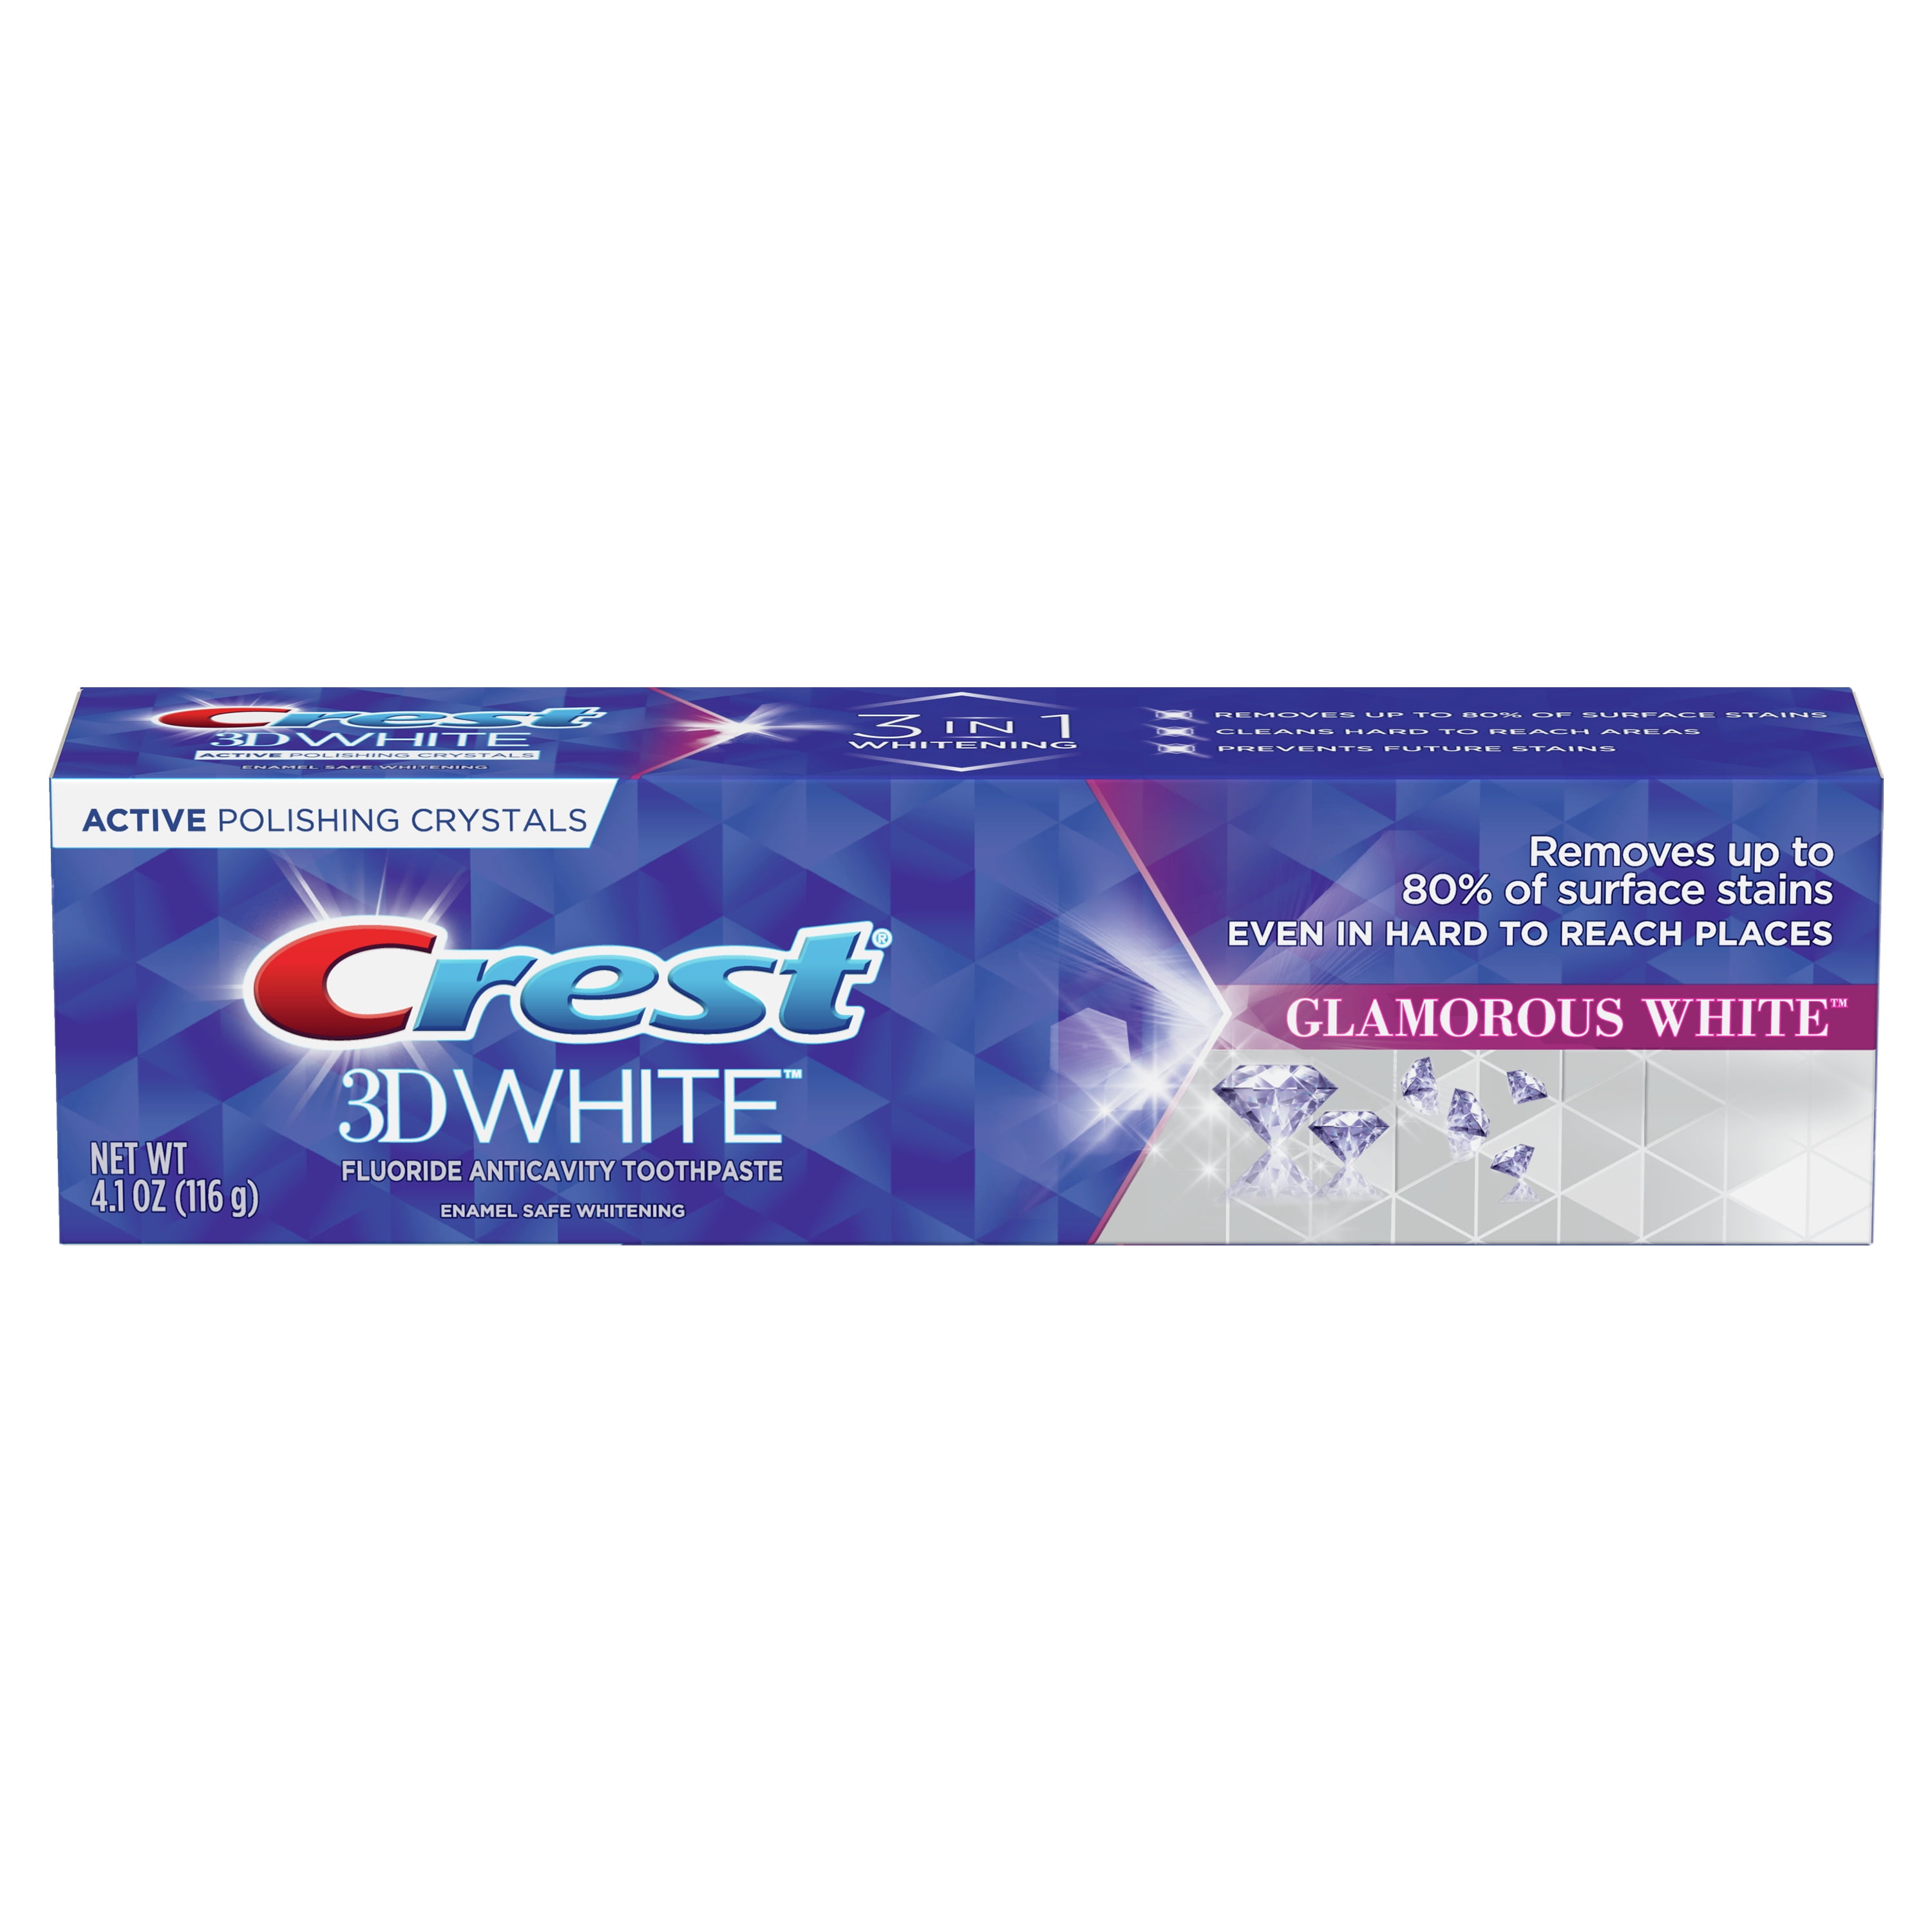 Crest 3DWHITE GLAMOROUS WHITE